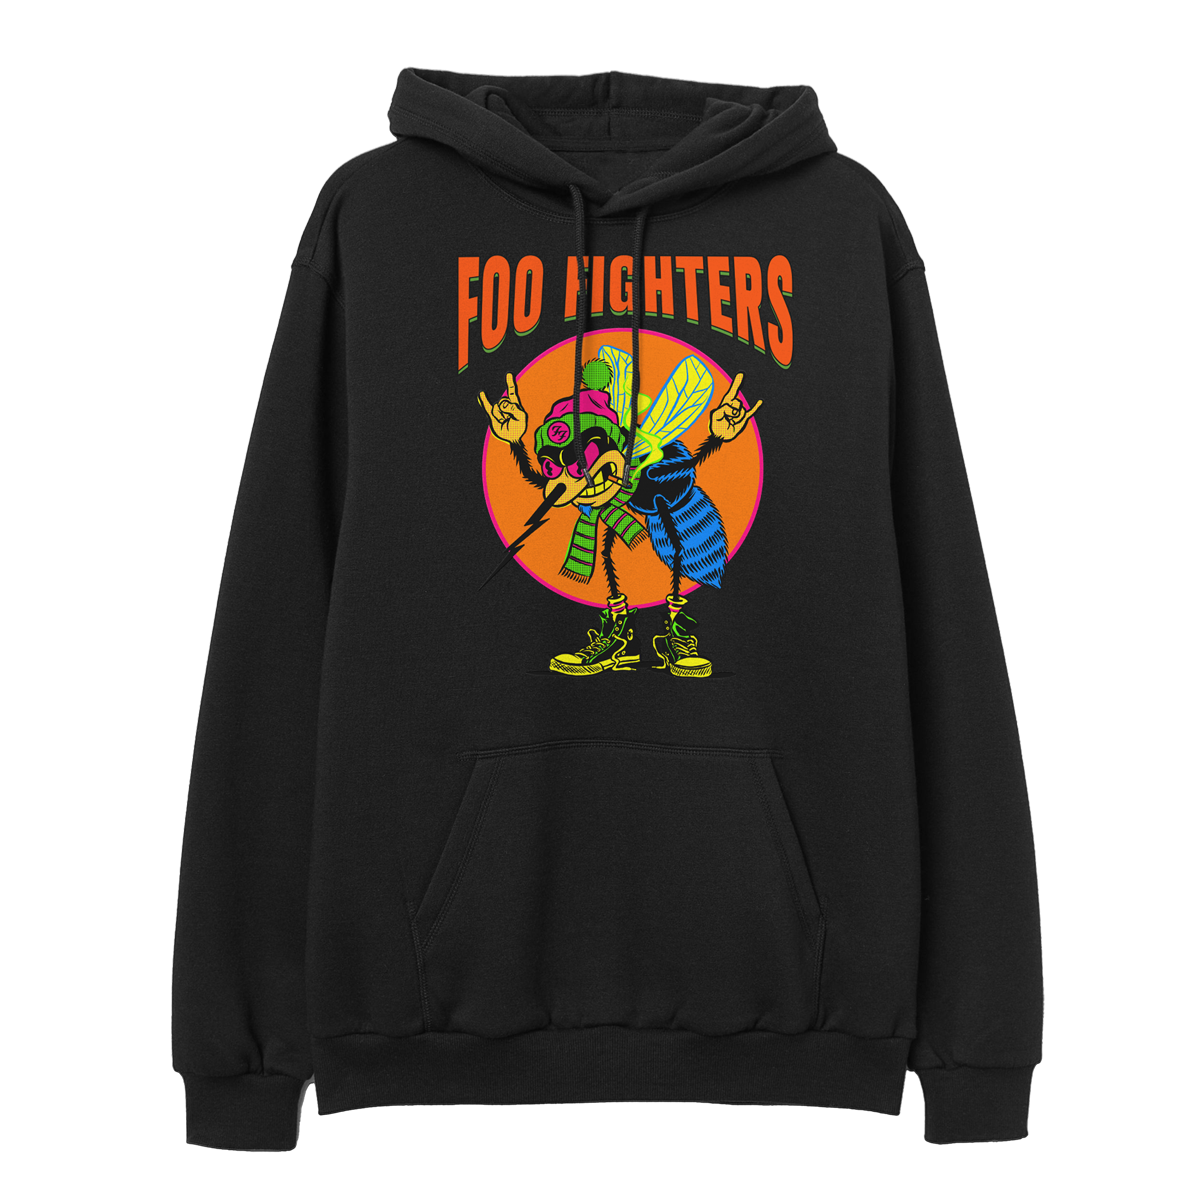 Alaska Tour Hoodie-Foo Fighters